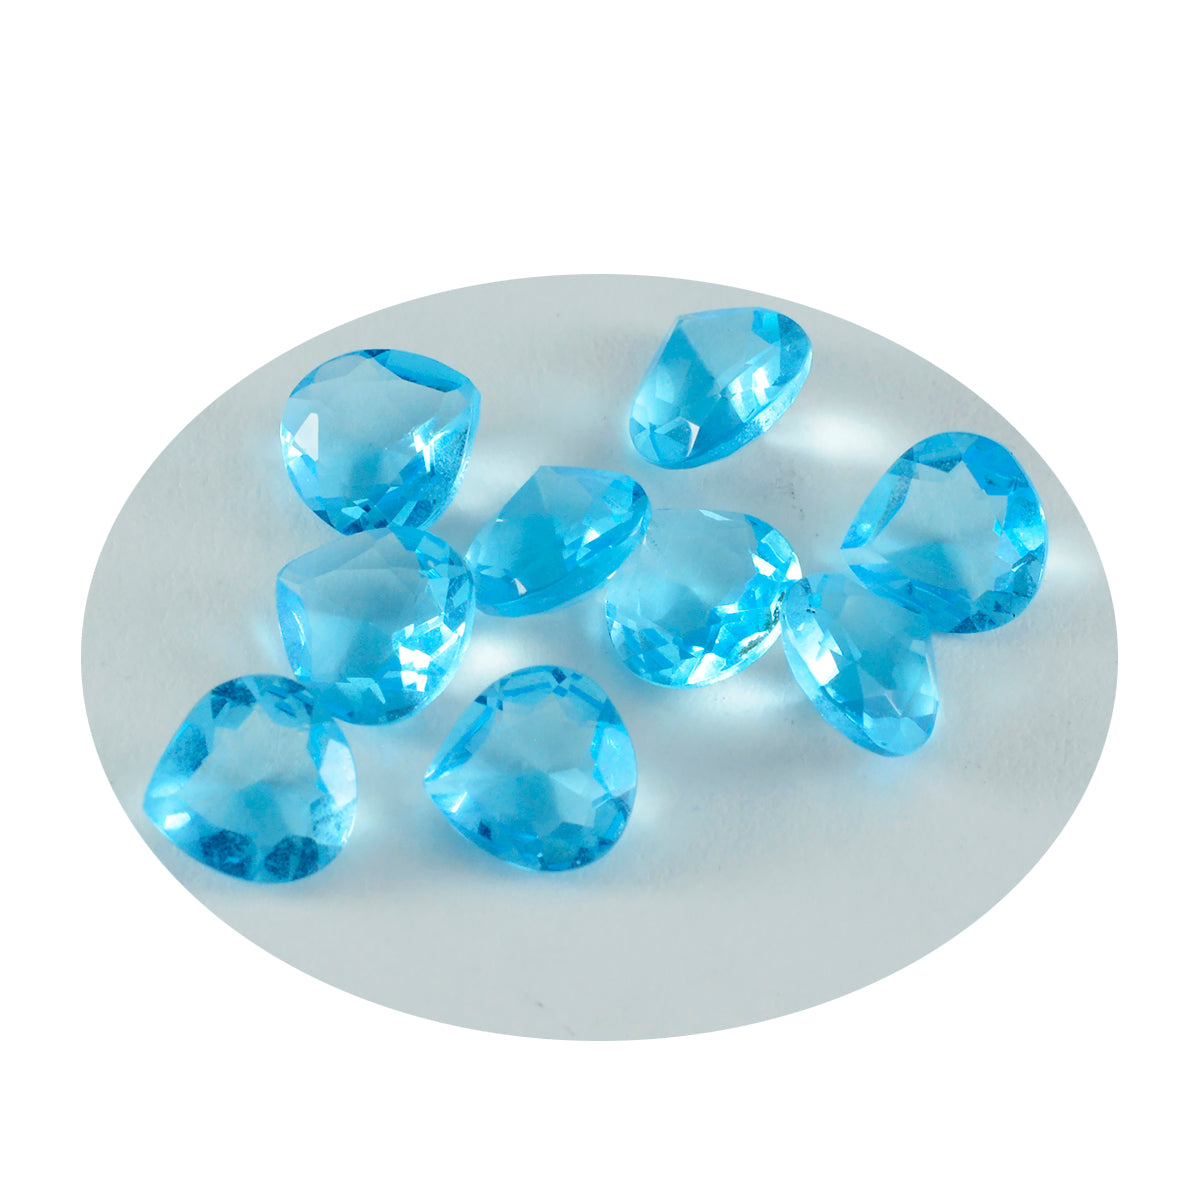 Riyogems 1 pièce topaze bleue cz à facettes 4x4mm en forme de cœur belles pierres précieuses de qualité